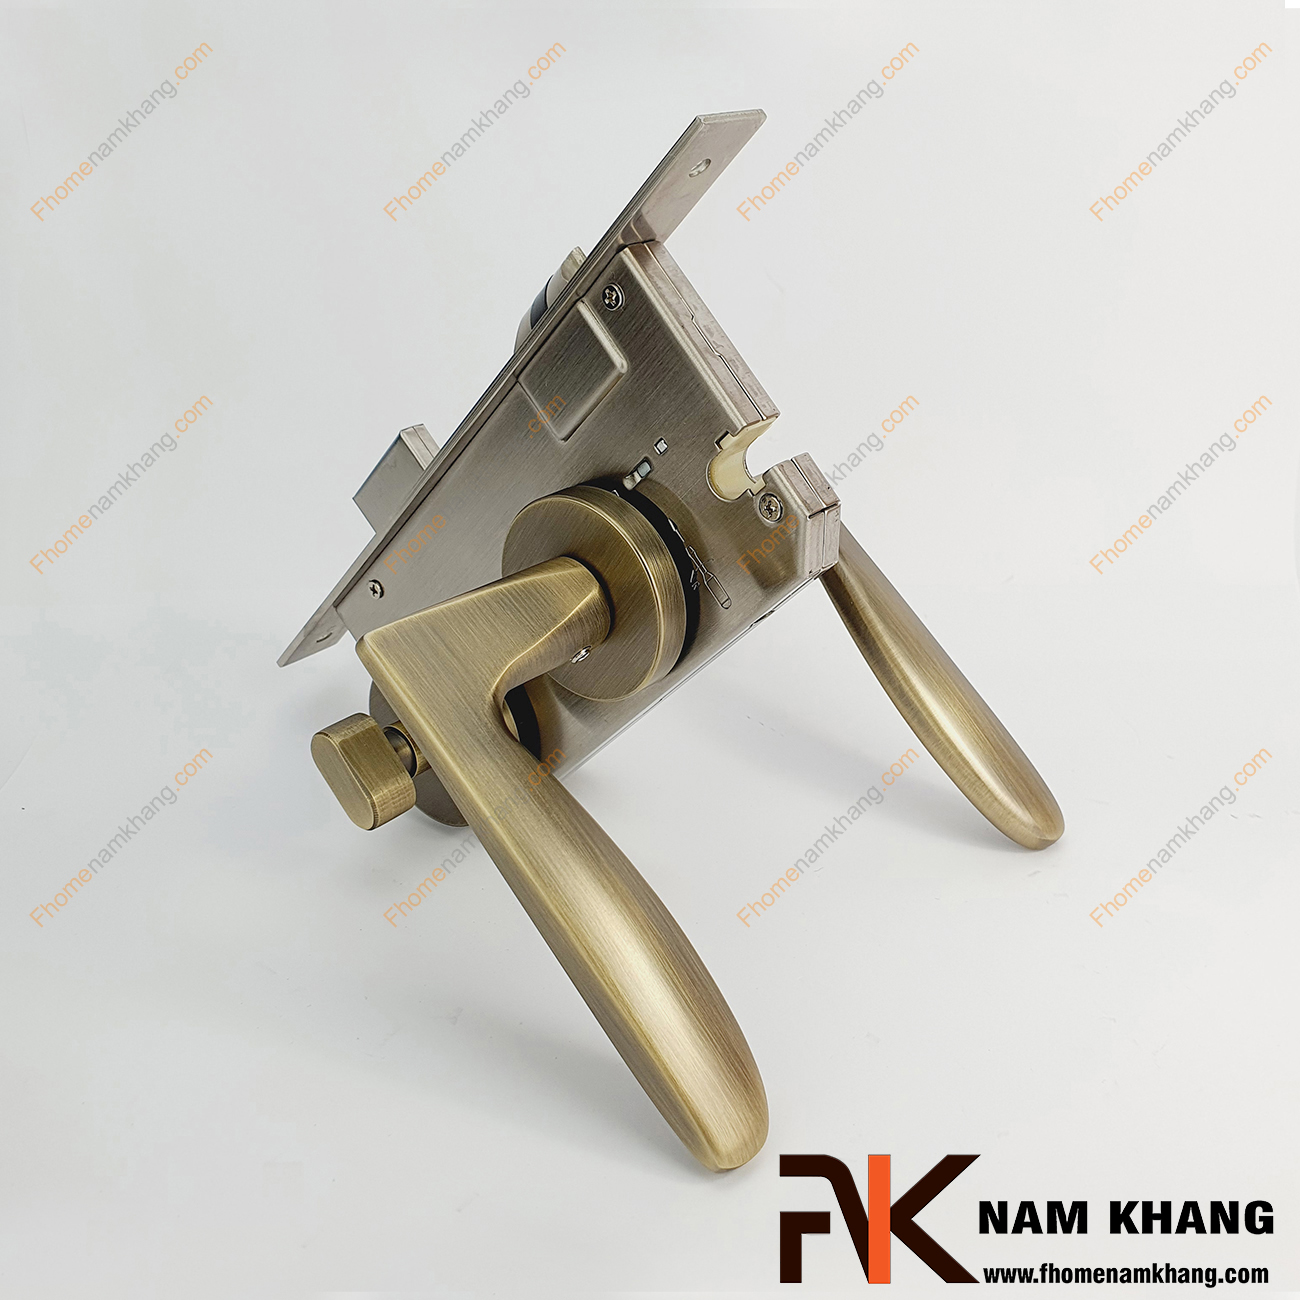 Khóa cửa phòng dạng trơn màu đồng rêu xước NK576-RX được sản xuất từ hợp kim cao cấp, gồm 1 đầu vặn 1 đầu chìa tiện lợi.